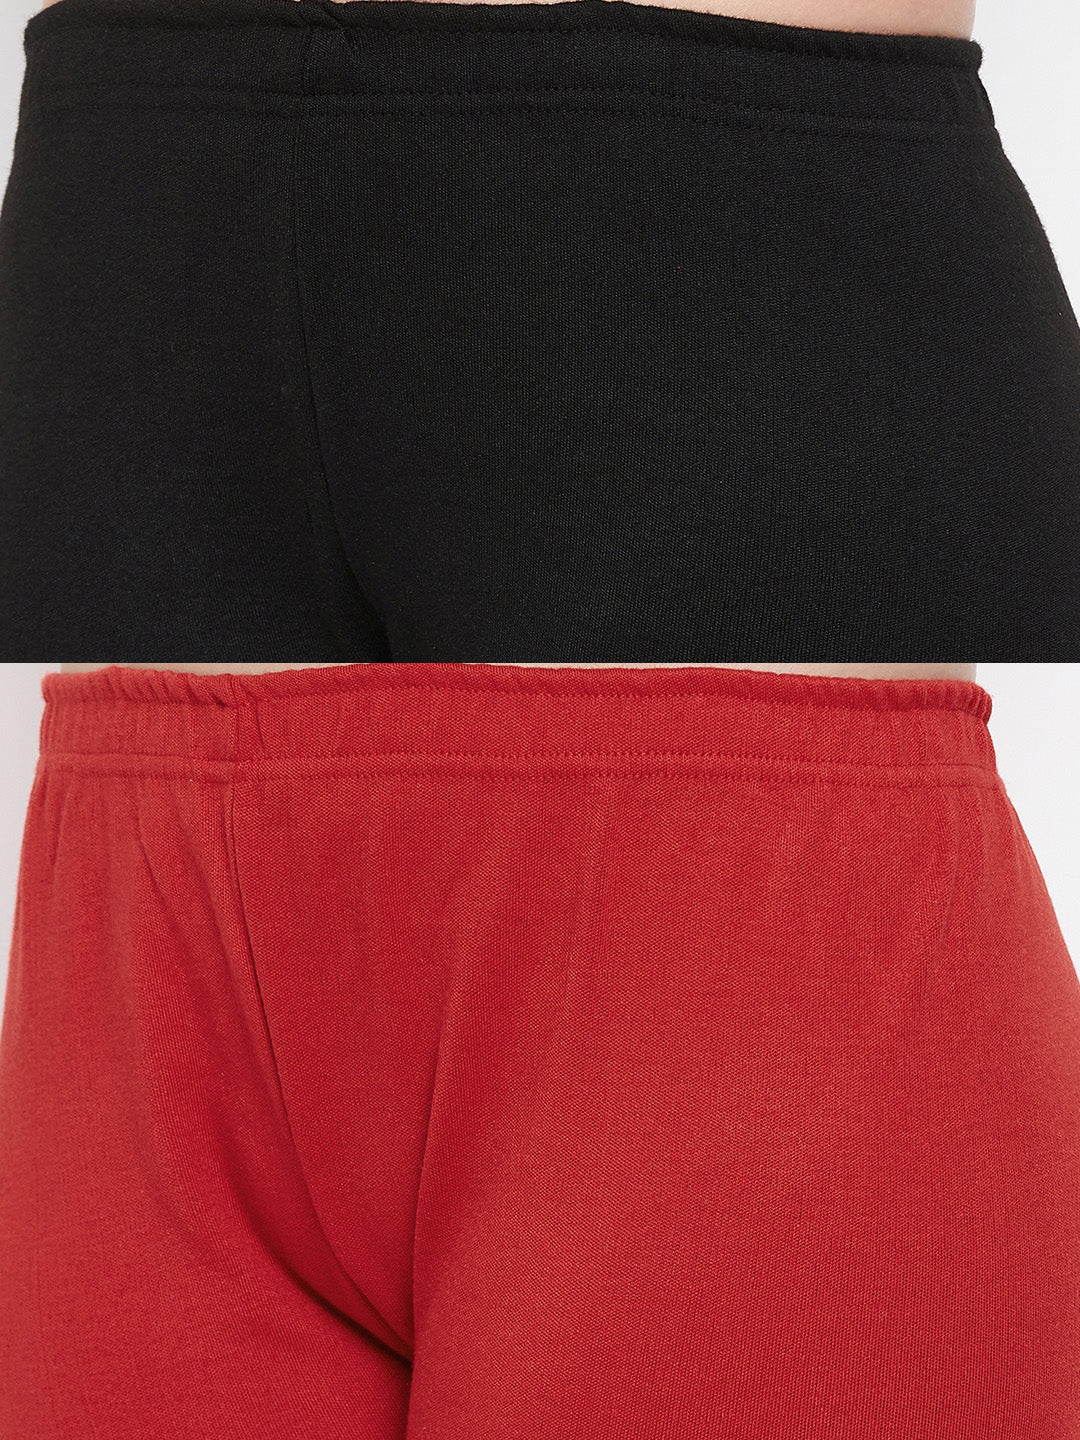 Clora Black & Red Solid Woolen Leggings (Pack Of 2)